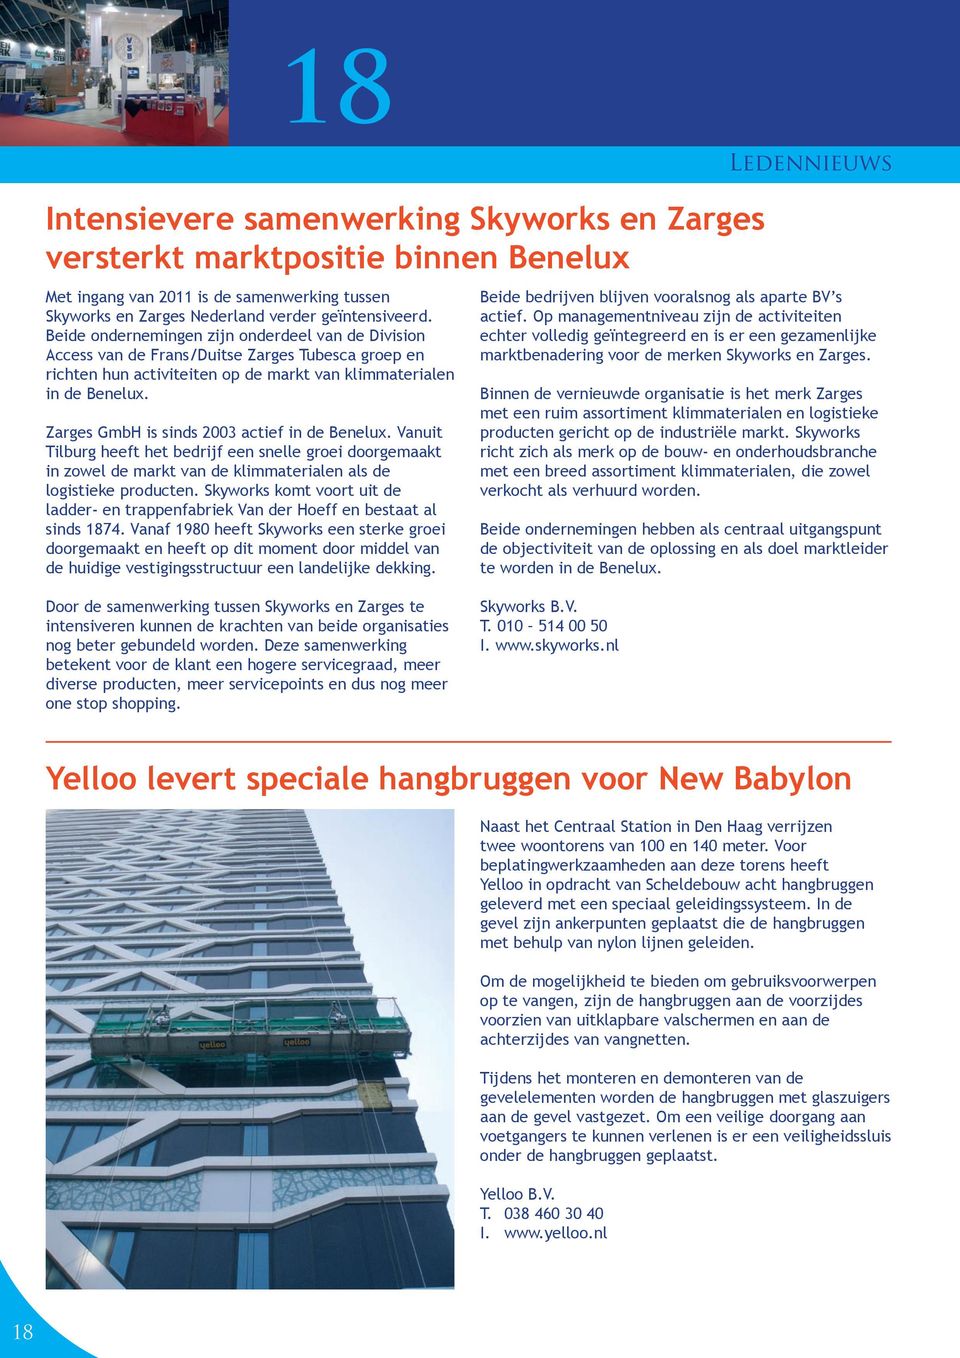 Zarges GmbH is sinds 2003 actief in de Benelux. Vanuit Tilburg heeft het bedrijf een snelle groei doorgemaakt in zowel de markt van de klimmaterialen als de logistieke producten.